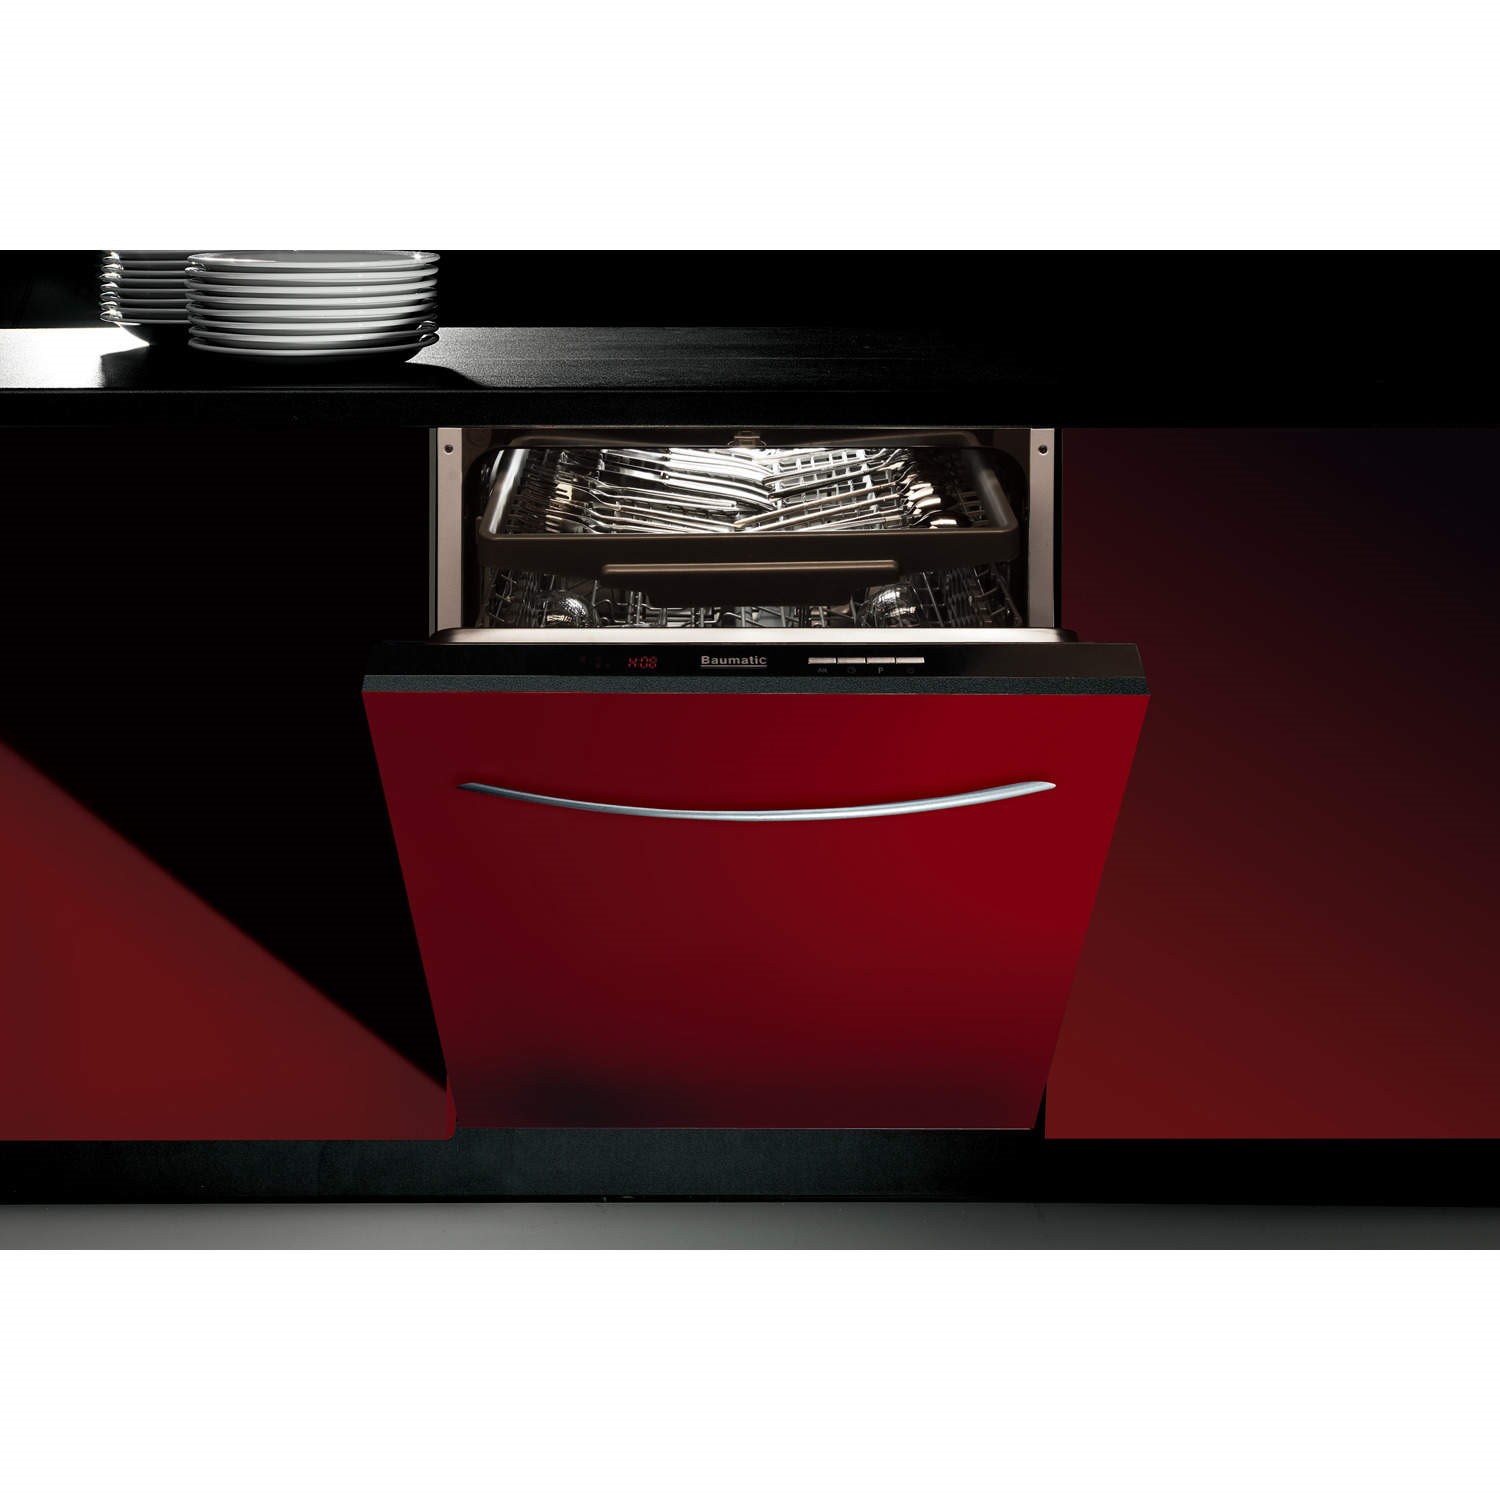 Встроенная посудомоечная машина 60 см горенье. Посудомоечная машина Baumatic tg5. Встраиваемая посудомоечная машина 60 см AKPO 18002. Встраиваемая посудомоечная машина 60 cm smv8hcx10r. Встраиваемая машина посудомойка 60 см.